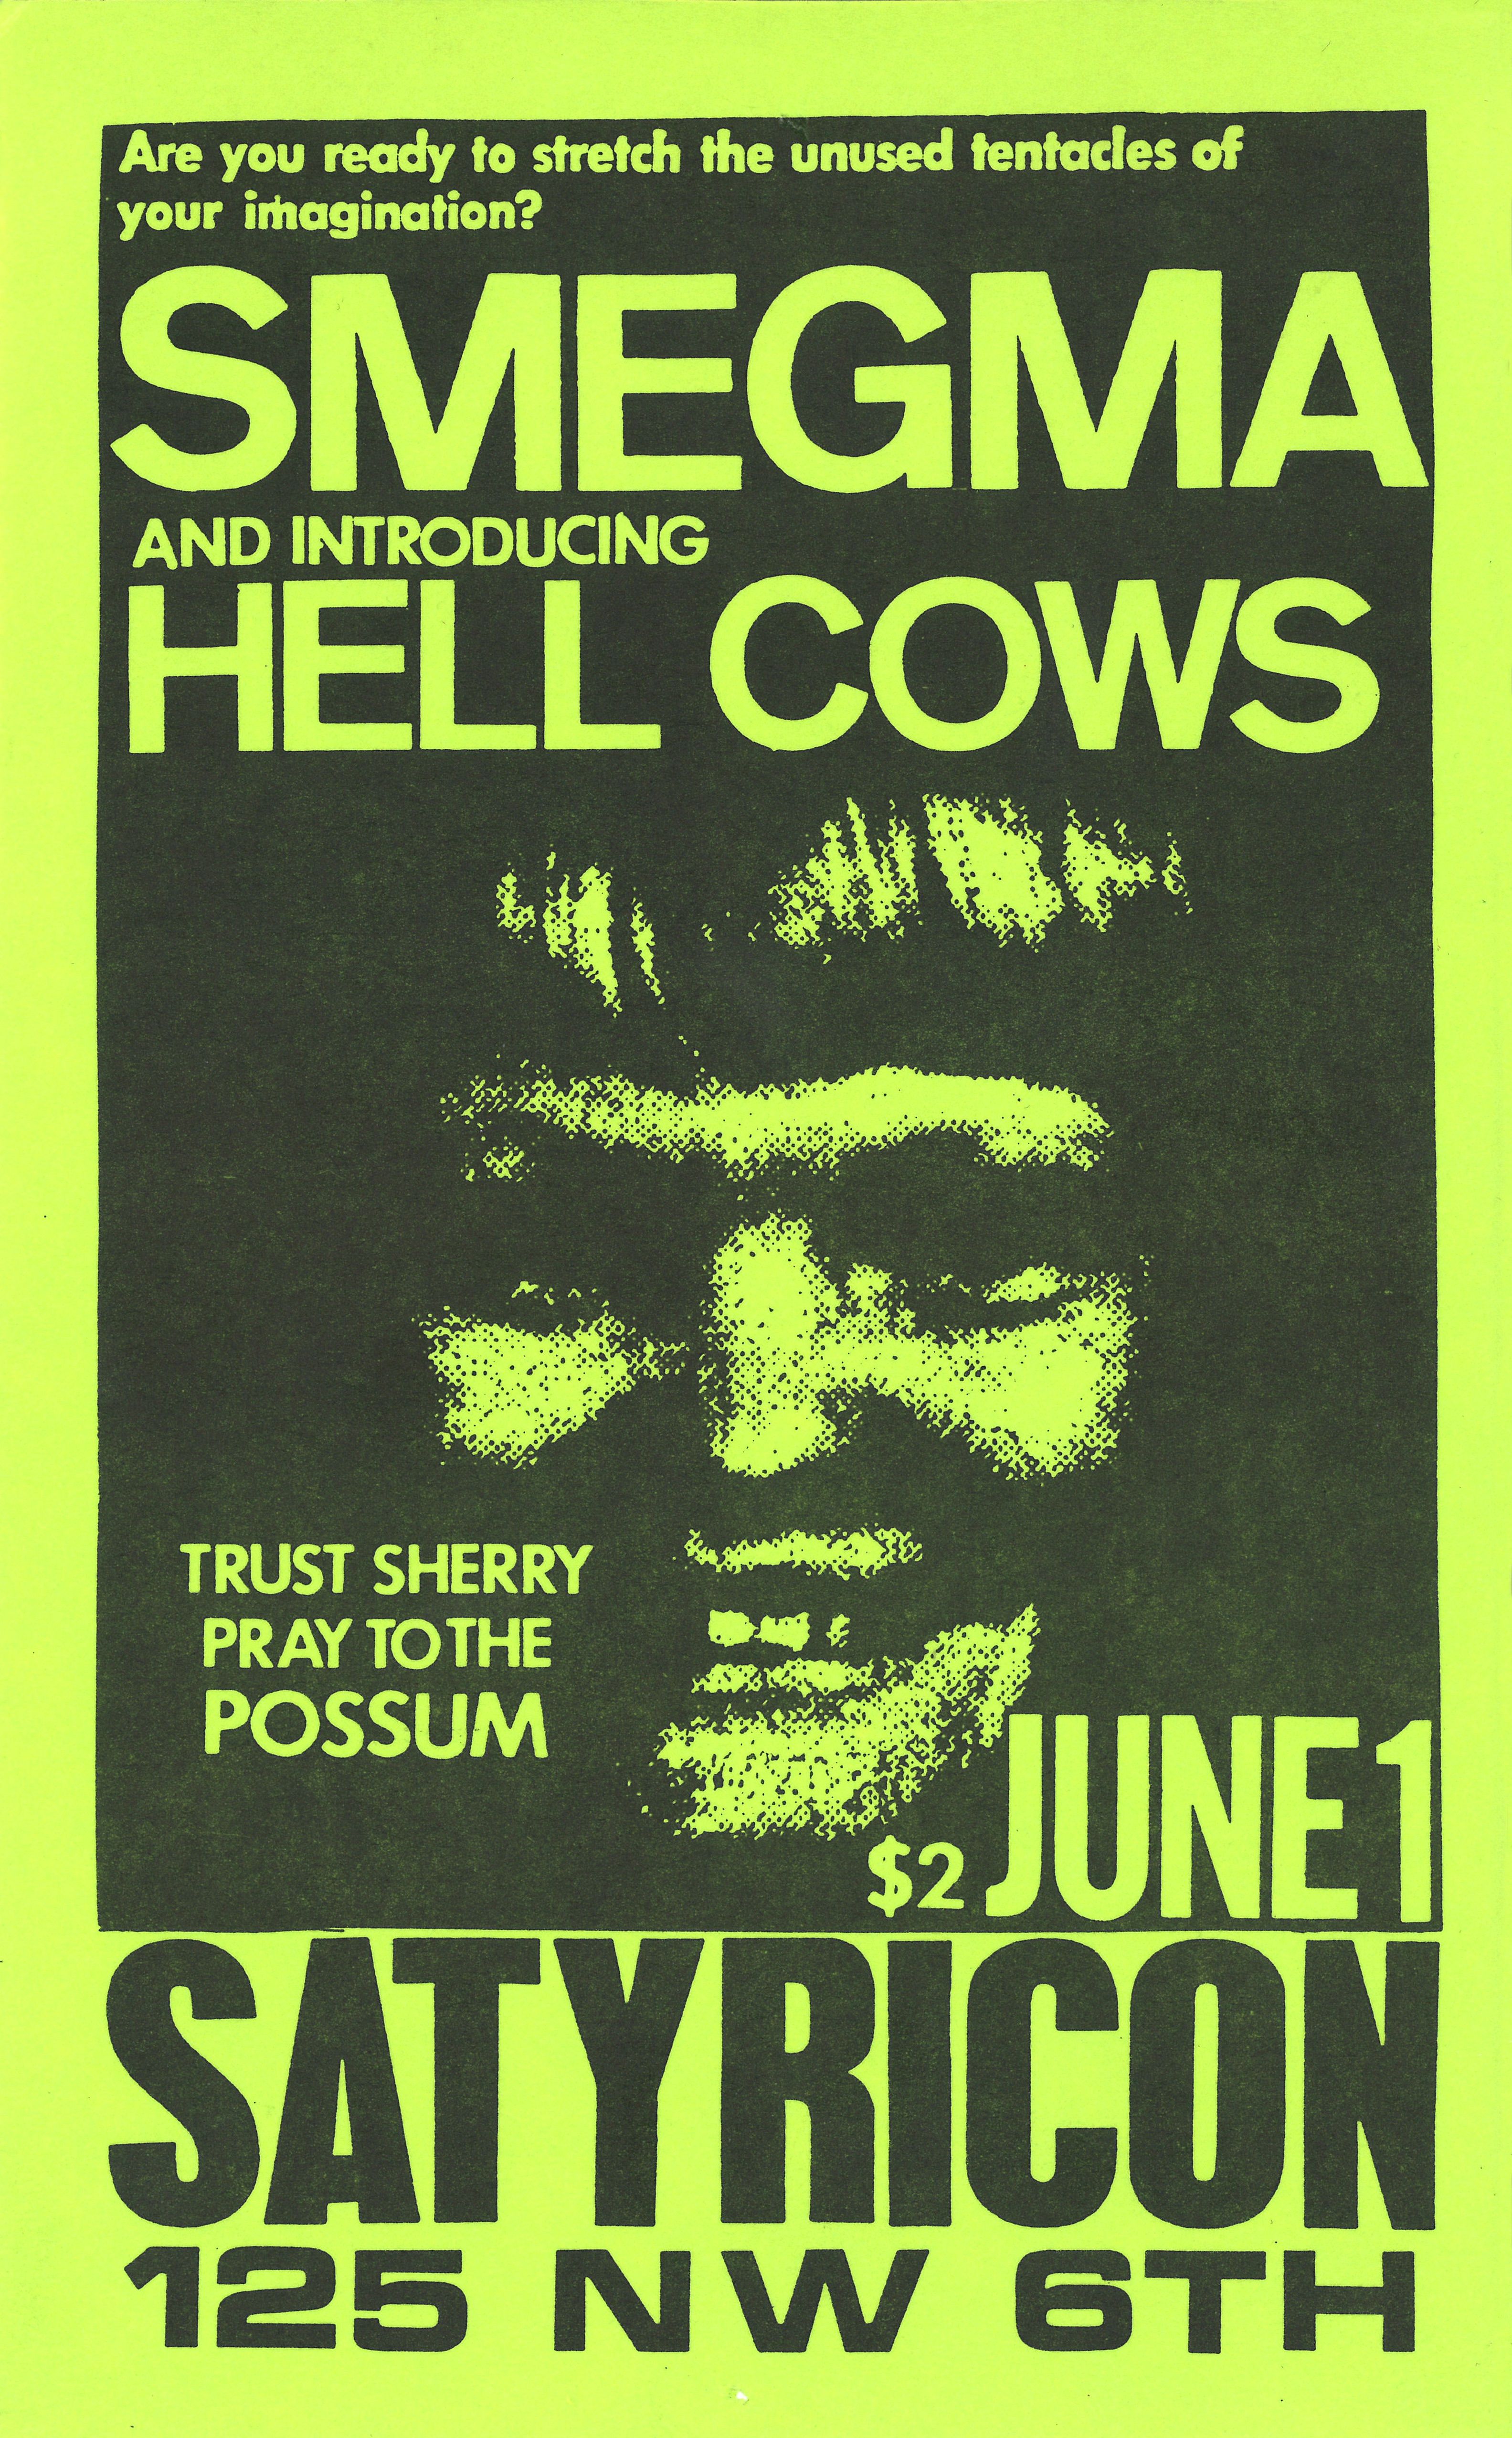 MXP-56.1 Smegma 1986 Satyricon  Jun 1 Concert Poster